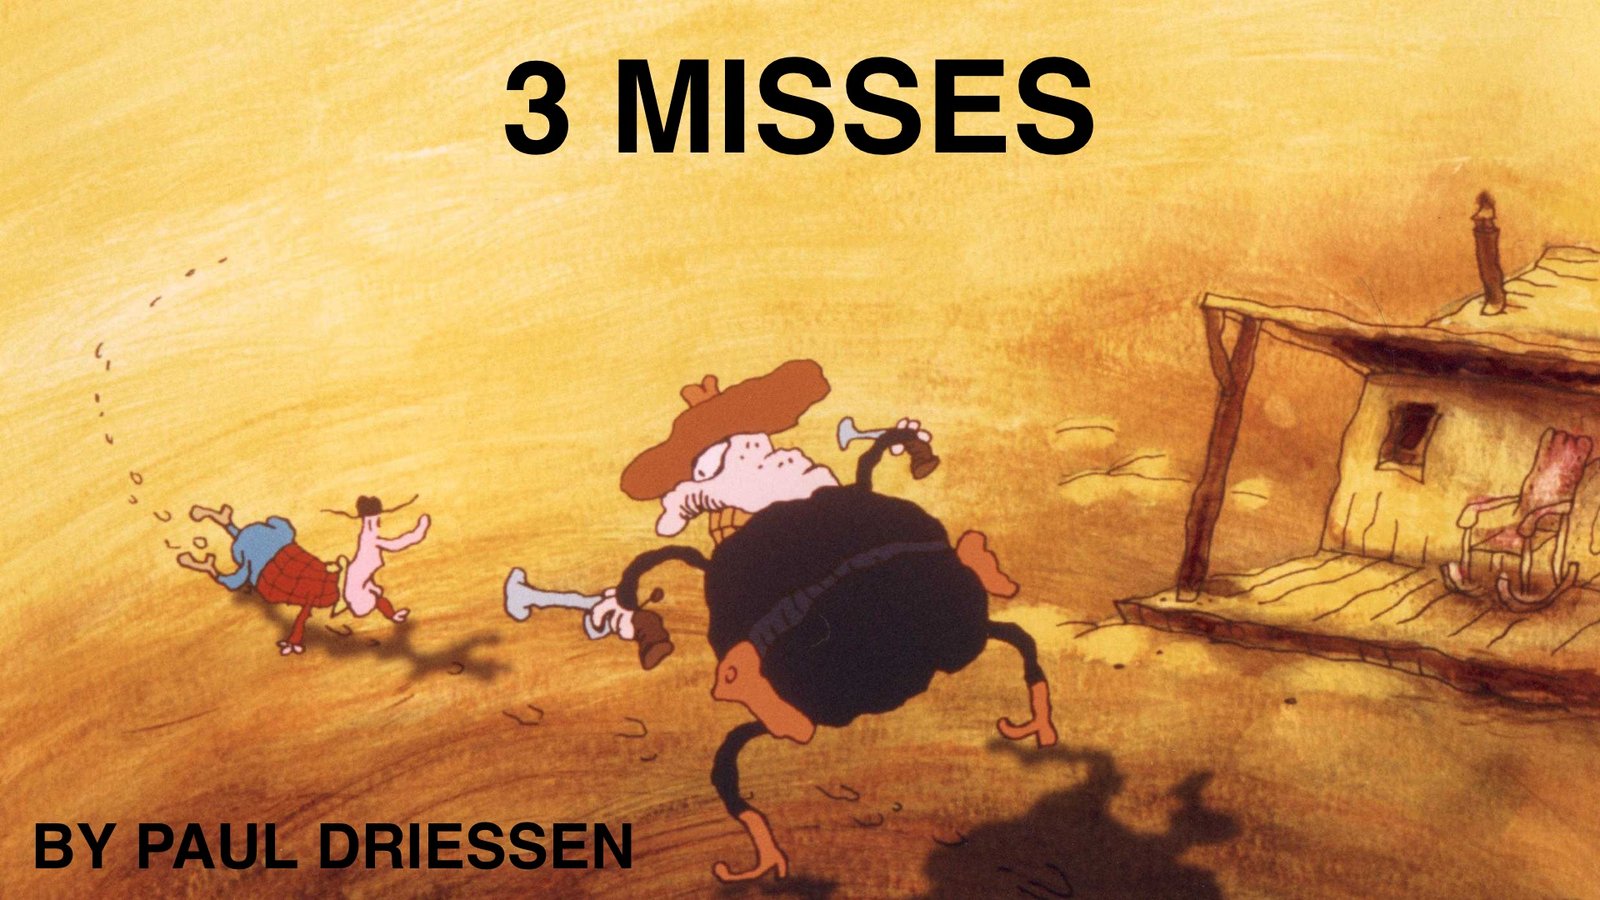 3 Misses